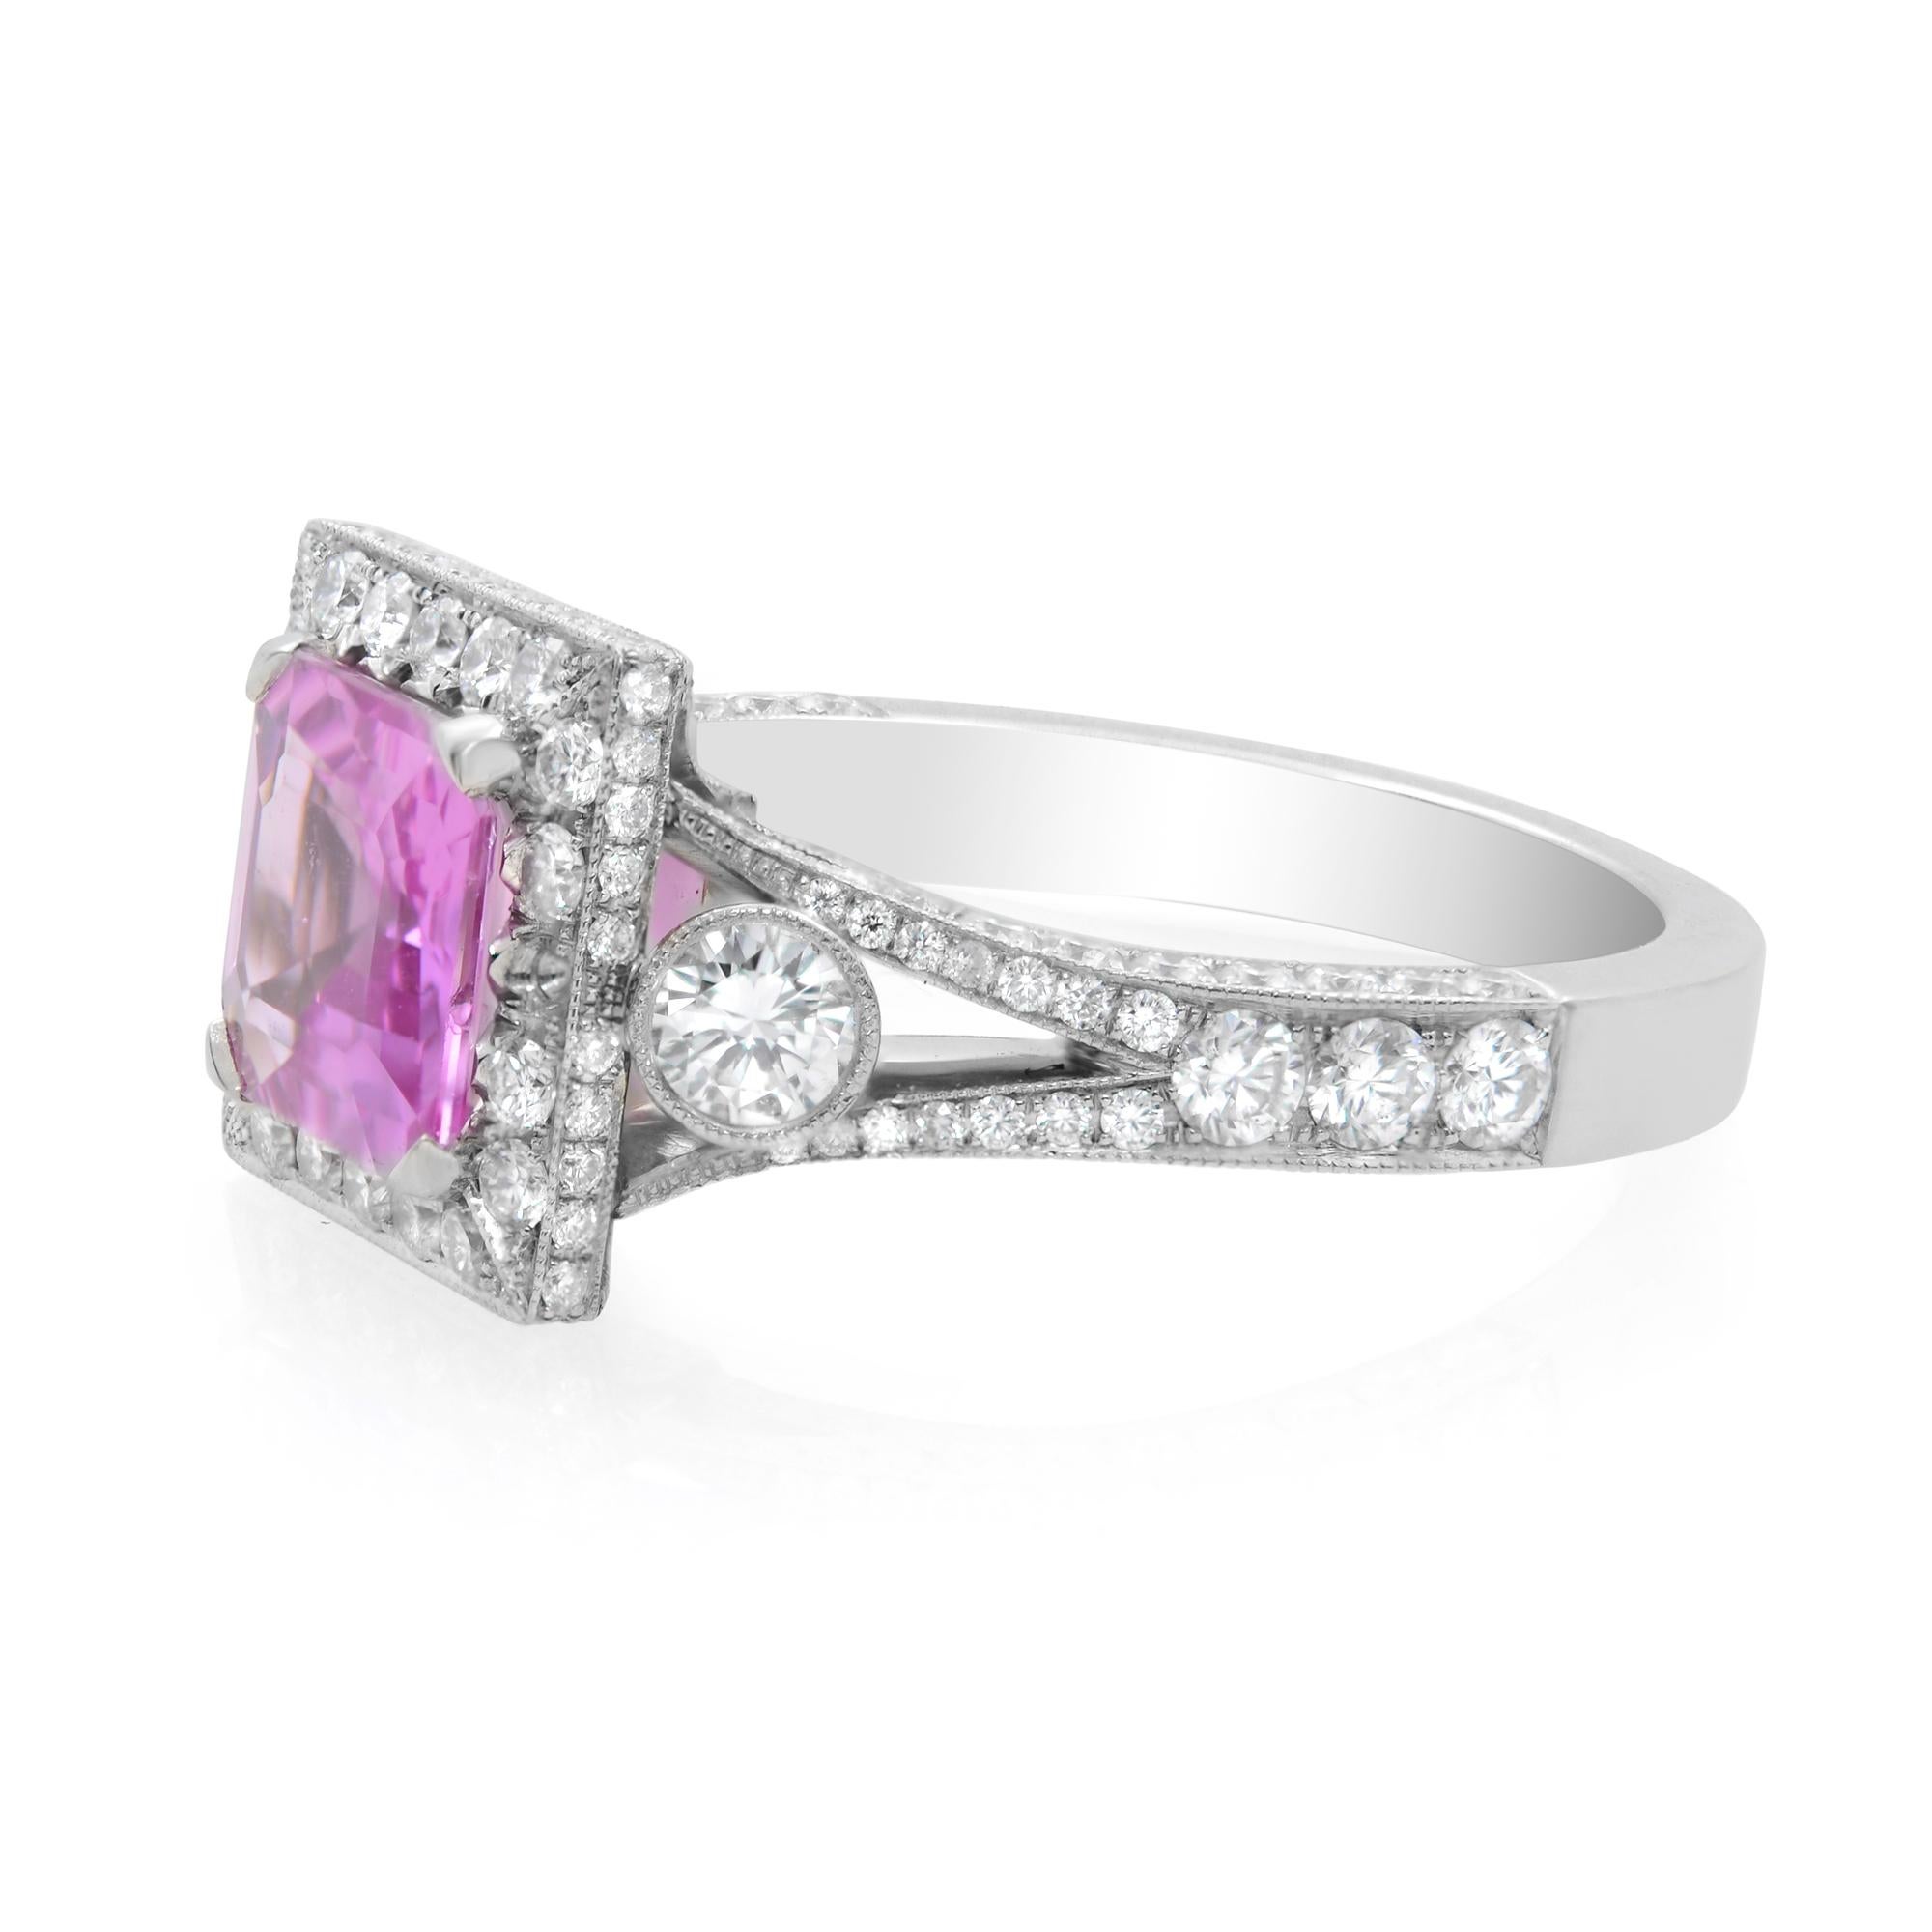 Ein rosafarbener Saphir im Asscher-Schliff (1,53 Karat) ist in einer Zackenfassung gefasst und von einem schillernden Diamantring umgeben. Der reizvolle rosa Farbton harmoniert wunderbar mit der Brillanz der Diamanten. Dieser Halo-Verlobungsring aus